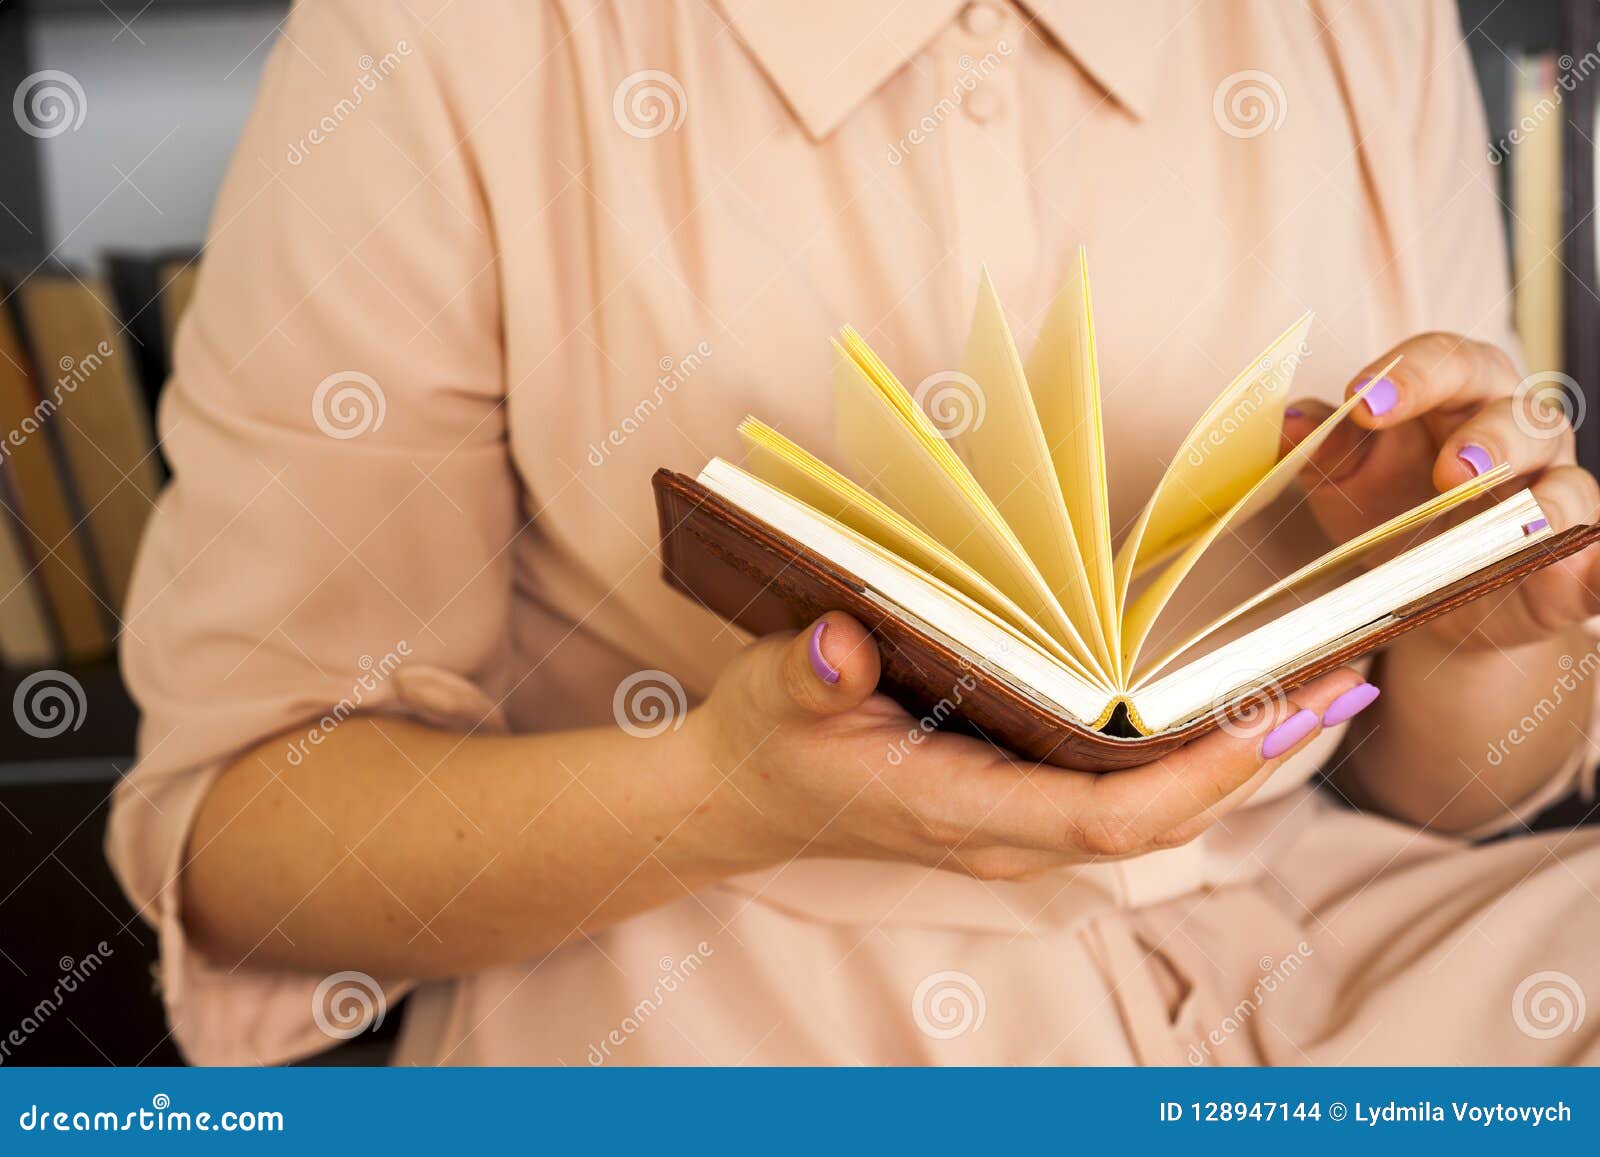 Знание старый сайт. Книга в женских руках. Рука держит книгу. Девушка в платье держит книгу. Картинка женщина с книгой в руках.